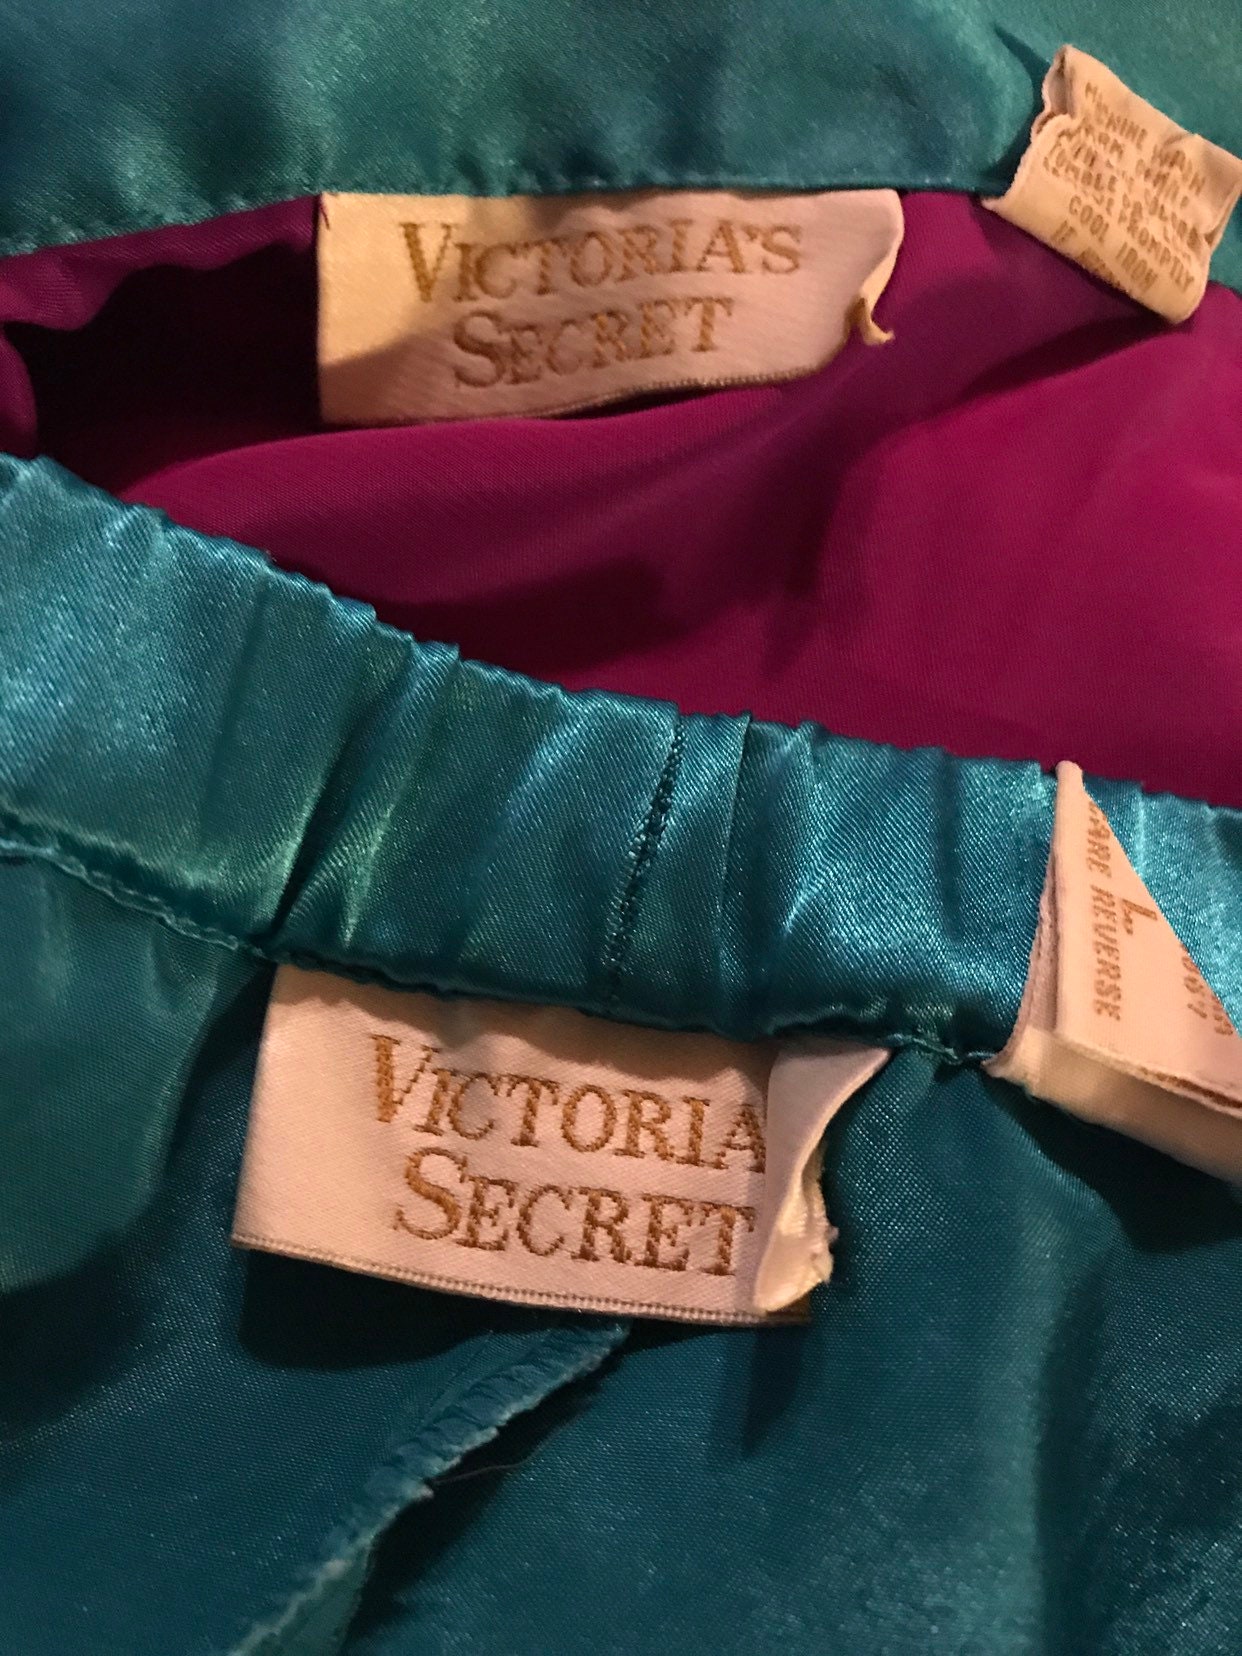 Vintage Victorias Secret Pajamas. 1990's Victorias Secret Satin Pajamas ...